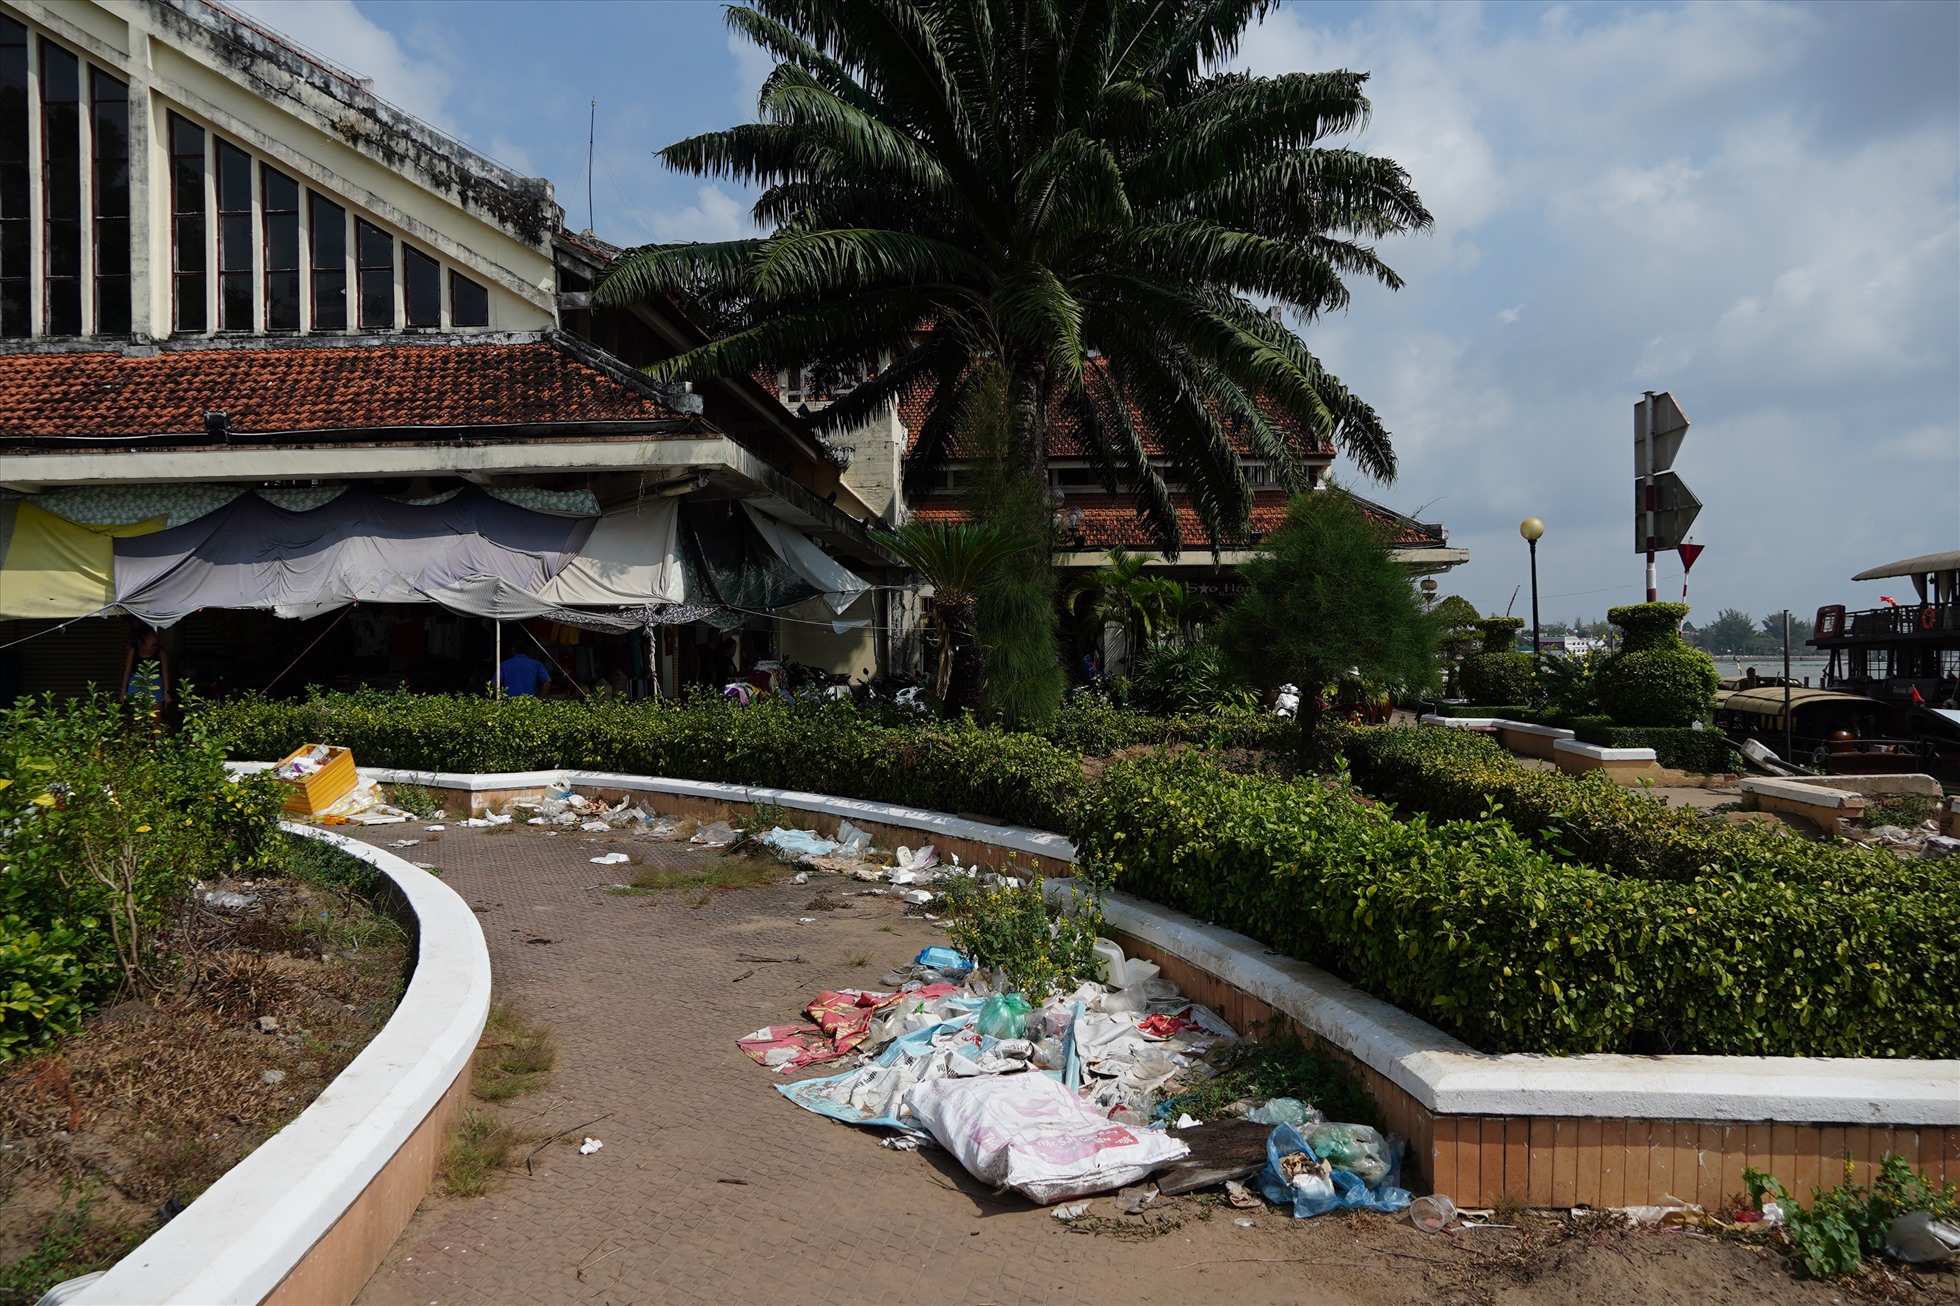 Ngay chợ Cần Thơ - nơi được quây tôn, rác thải chất đống xung quanh gây ảnh hưởng đến mỹ quan đô thị.